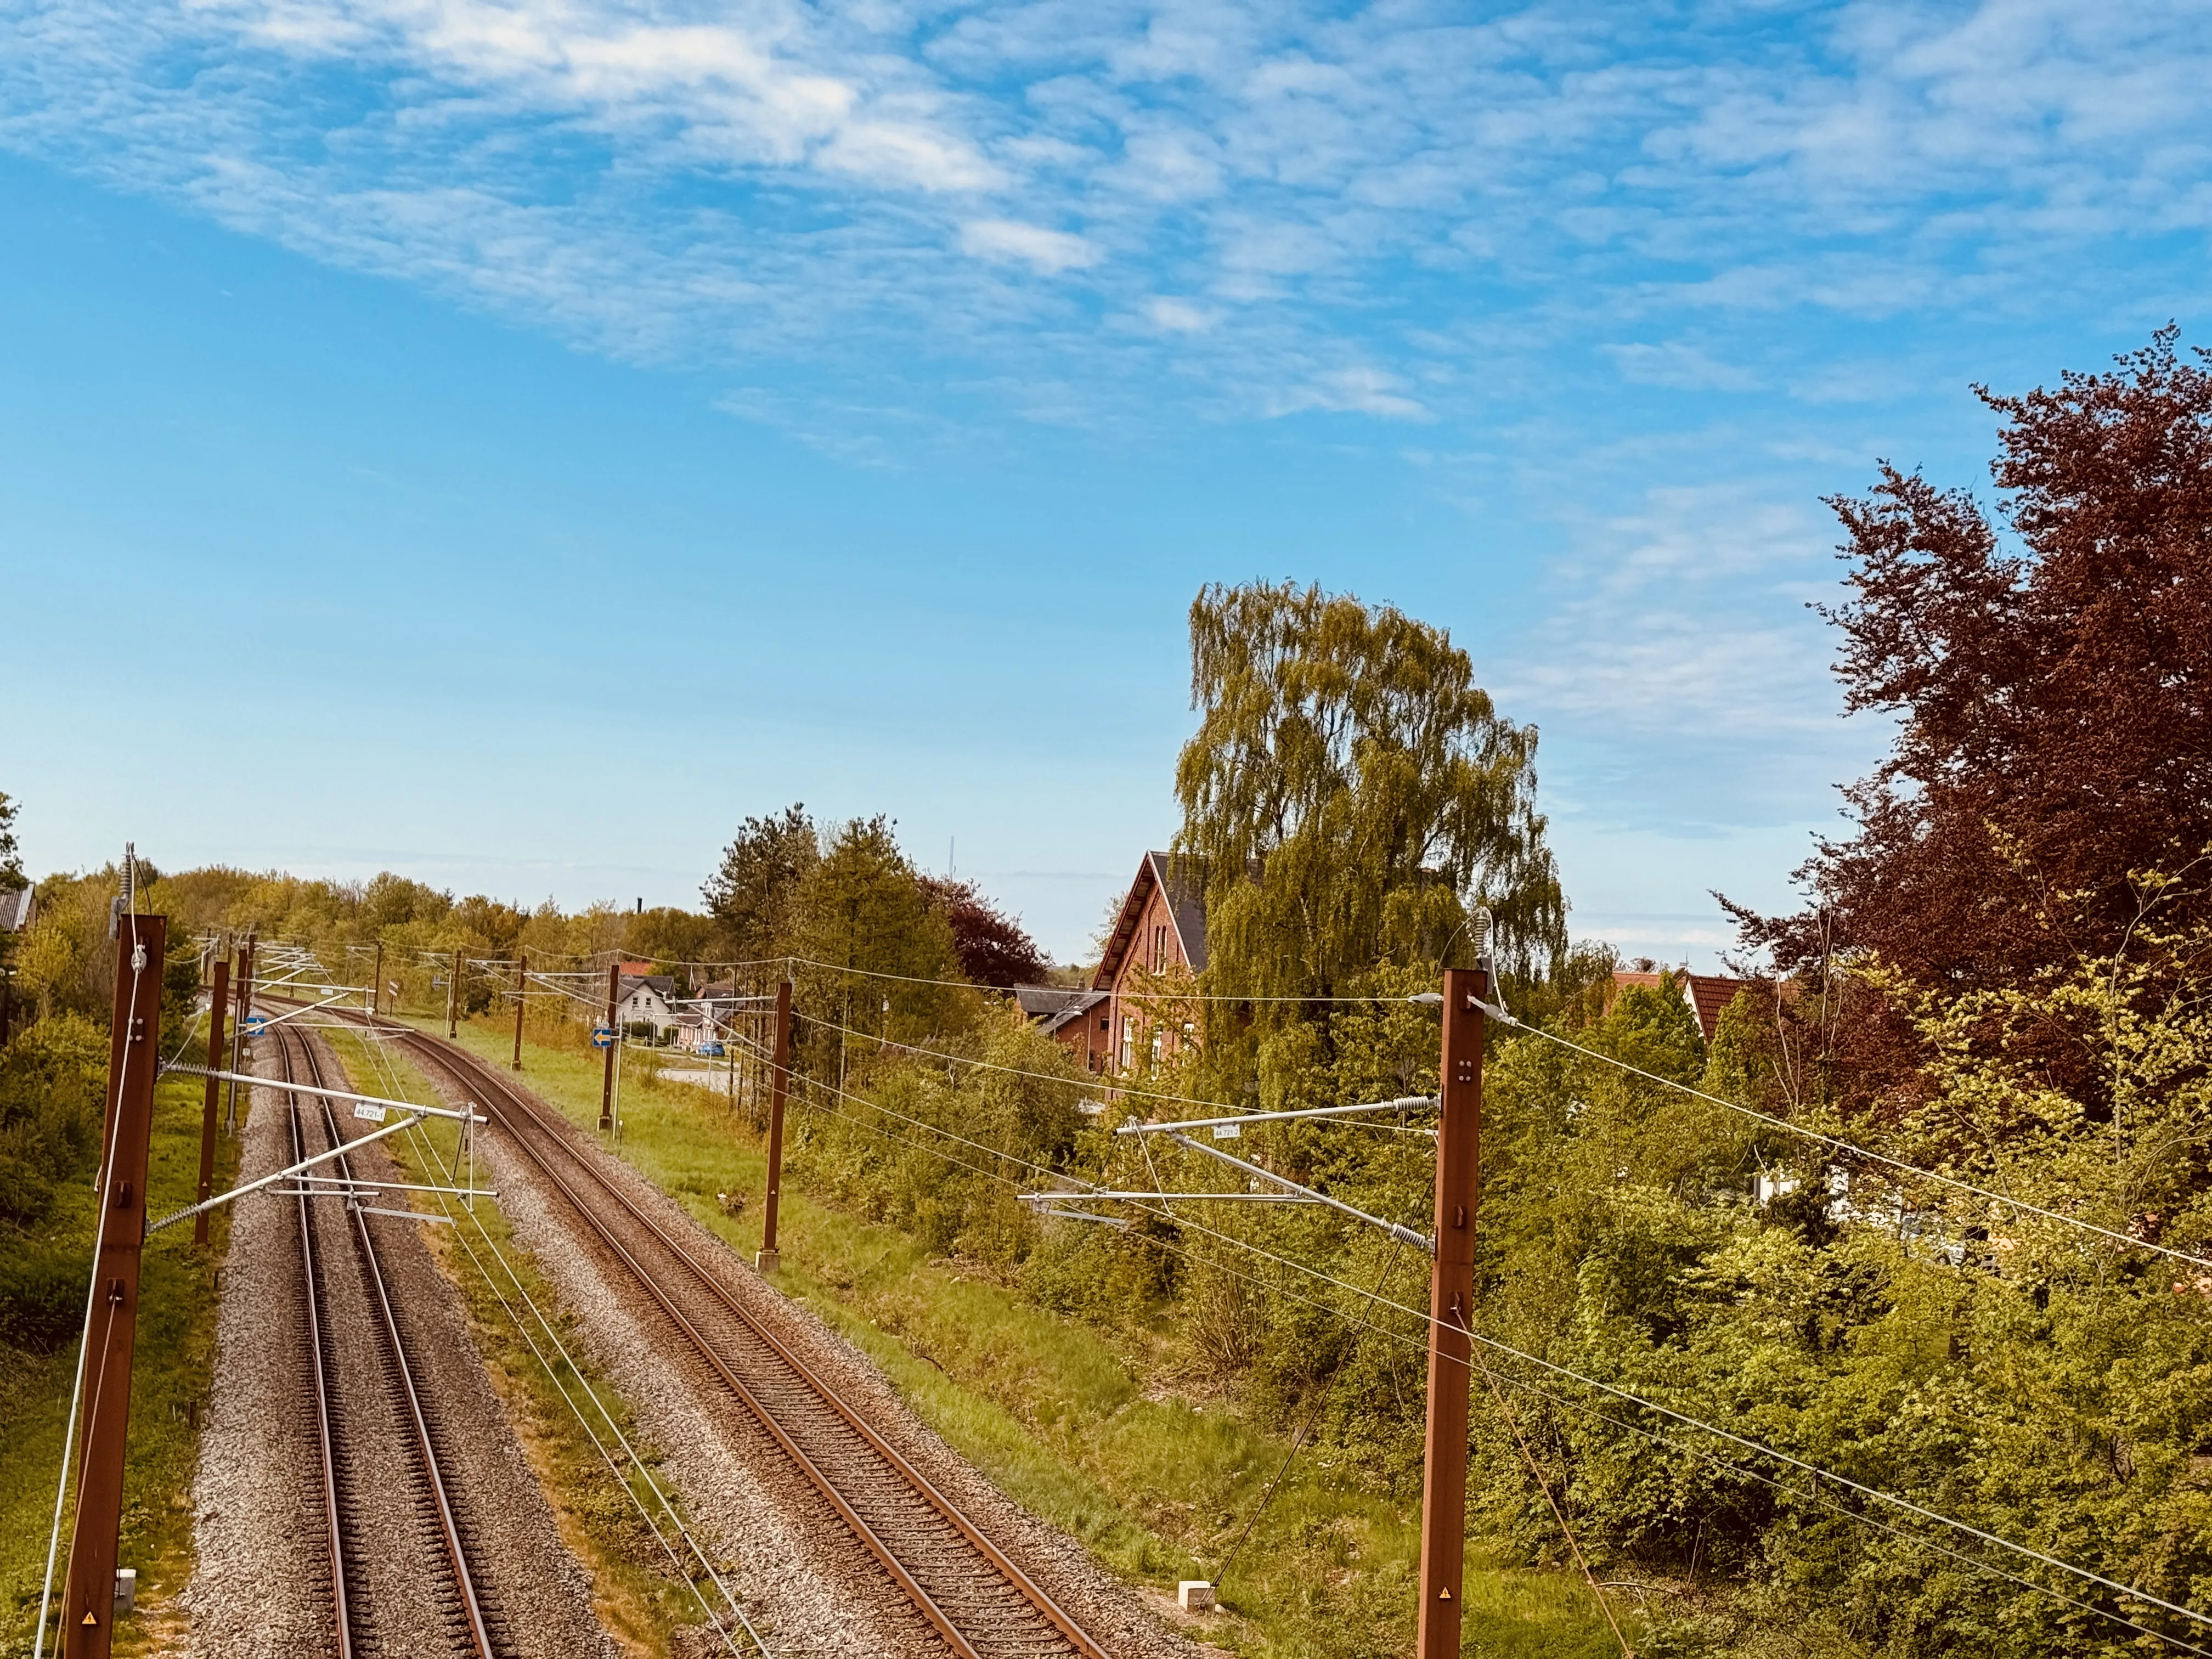 Billede af Løsning Trinbræt - selv om trinbrættet er nedlagt og fjernet, så findes den oprindelige stationsbygning endnu.